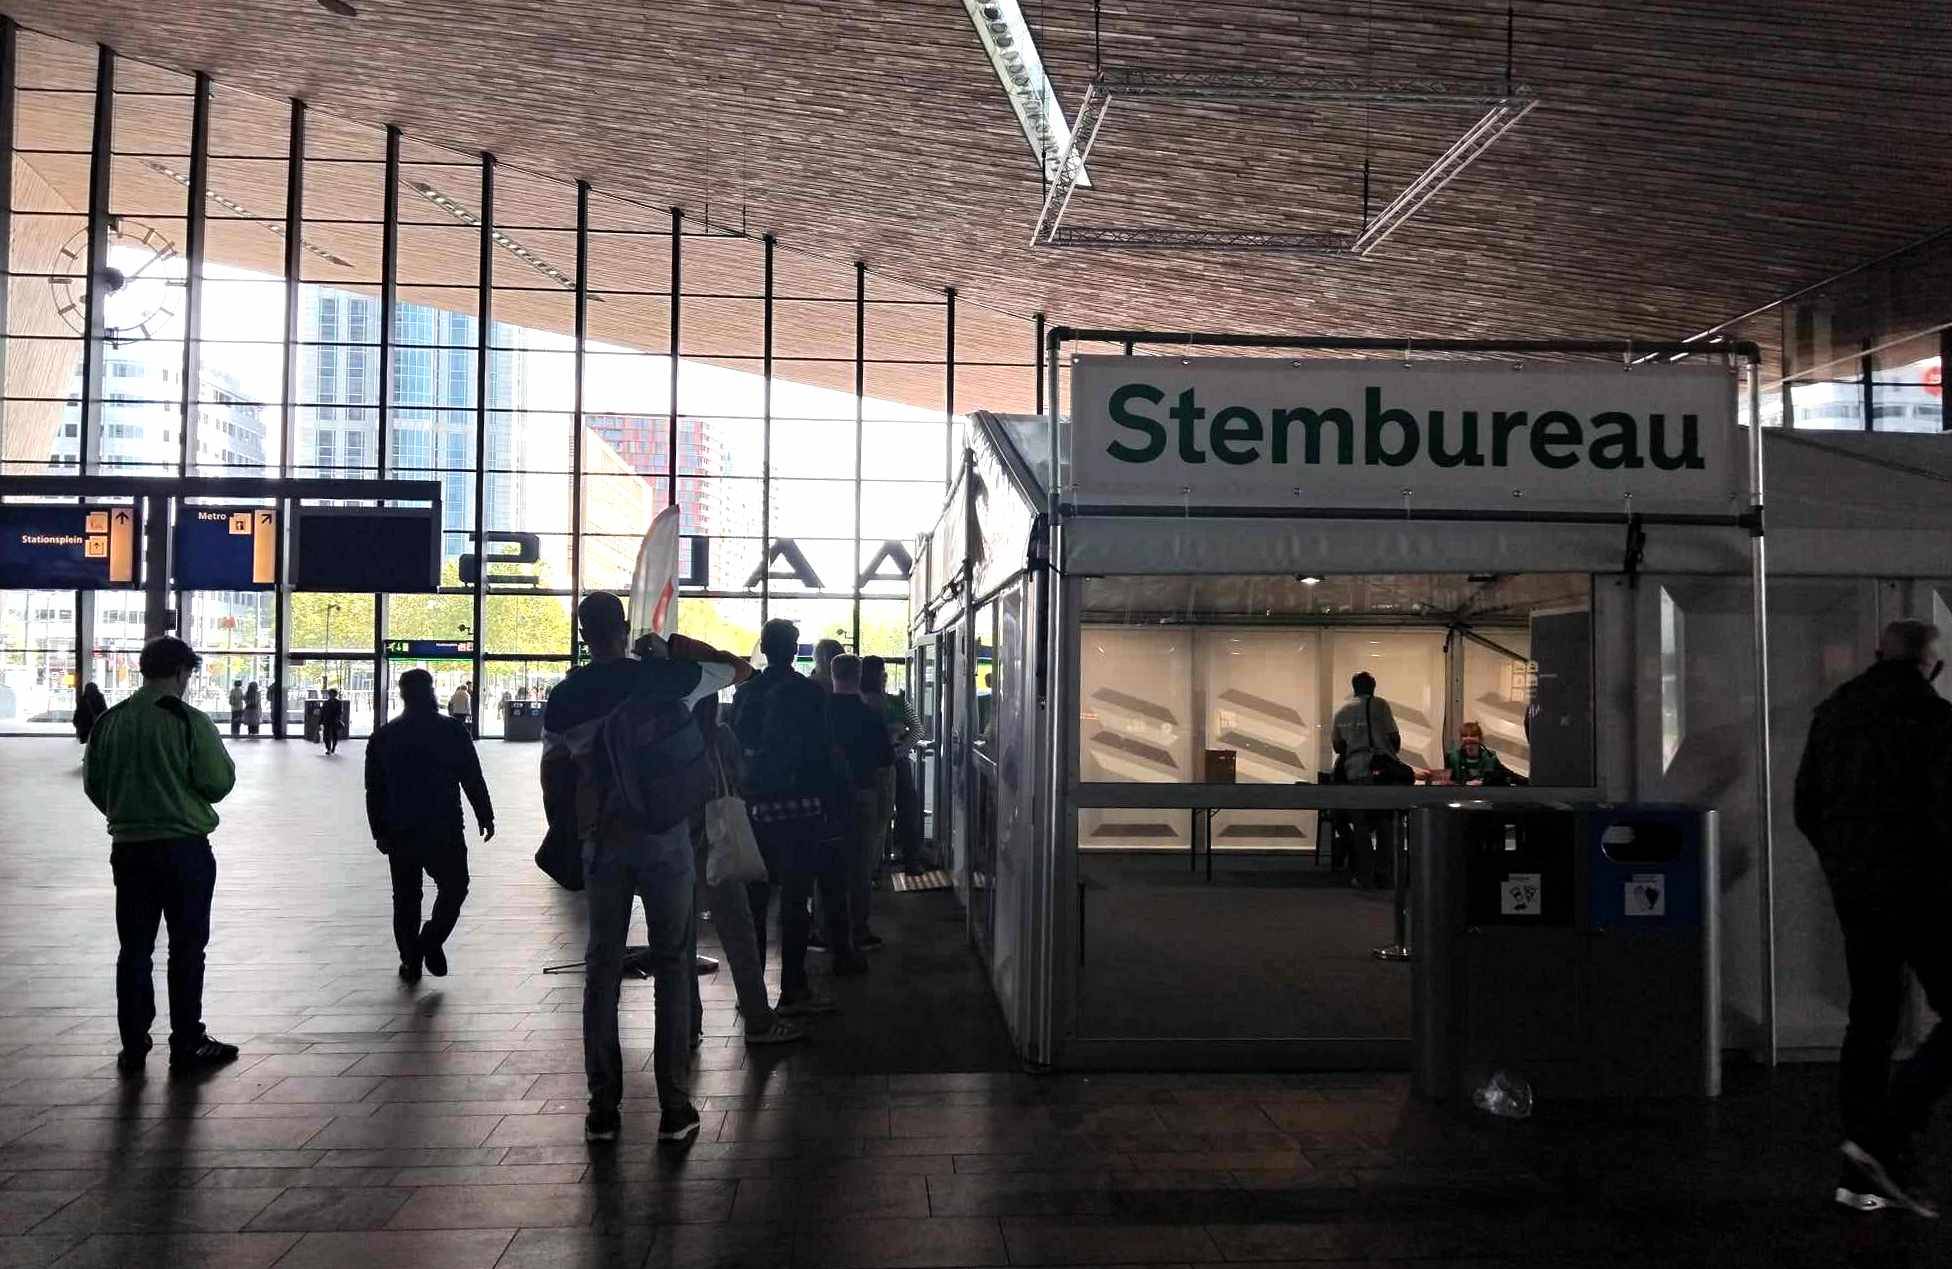 Przestronna hala główna dworca kolejowego w Rotterdamie - brązowe, asymetryczne sklepienie i przeszklona ściana z wejściem, na tle tej ściany po prawej stronie ustawiony tymczasowy lokal wyborczy; przy lokalu nieduża kolejka osób, które czekają, żeby oddać głos w wyborach w Holandii